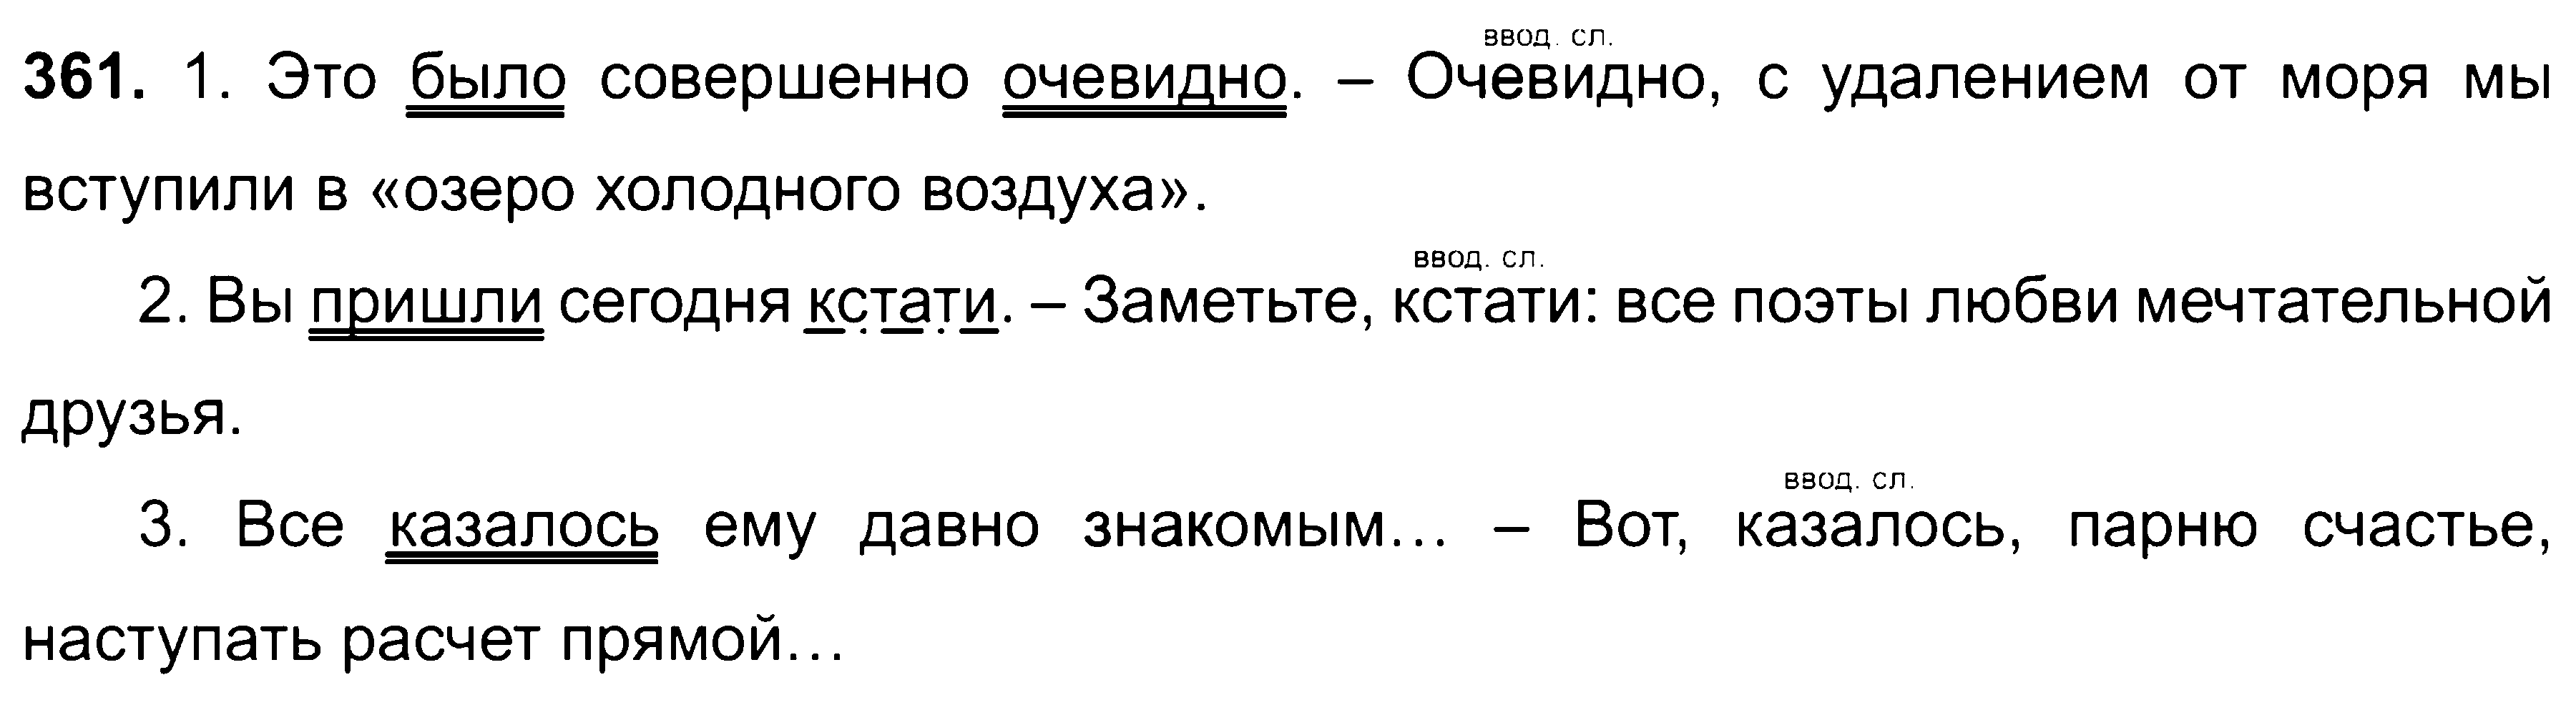 ГДЗ Русский язык 8 класс - 361